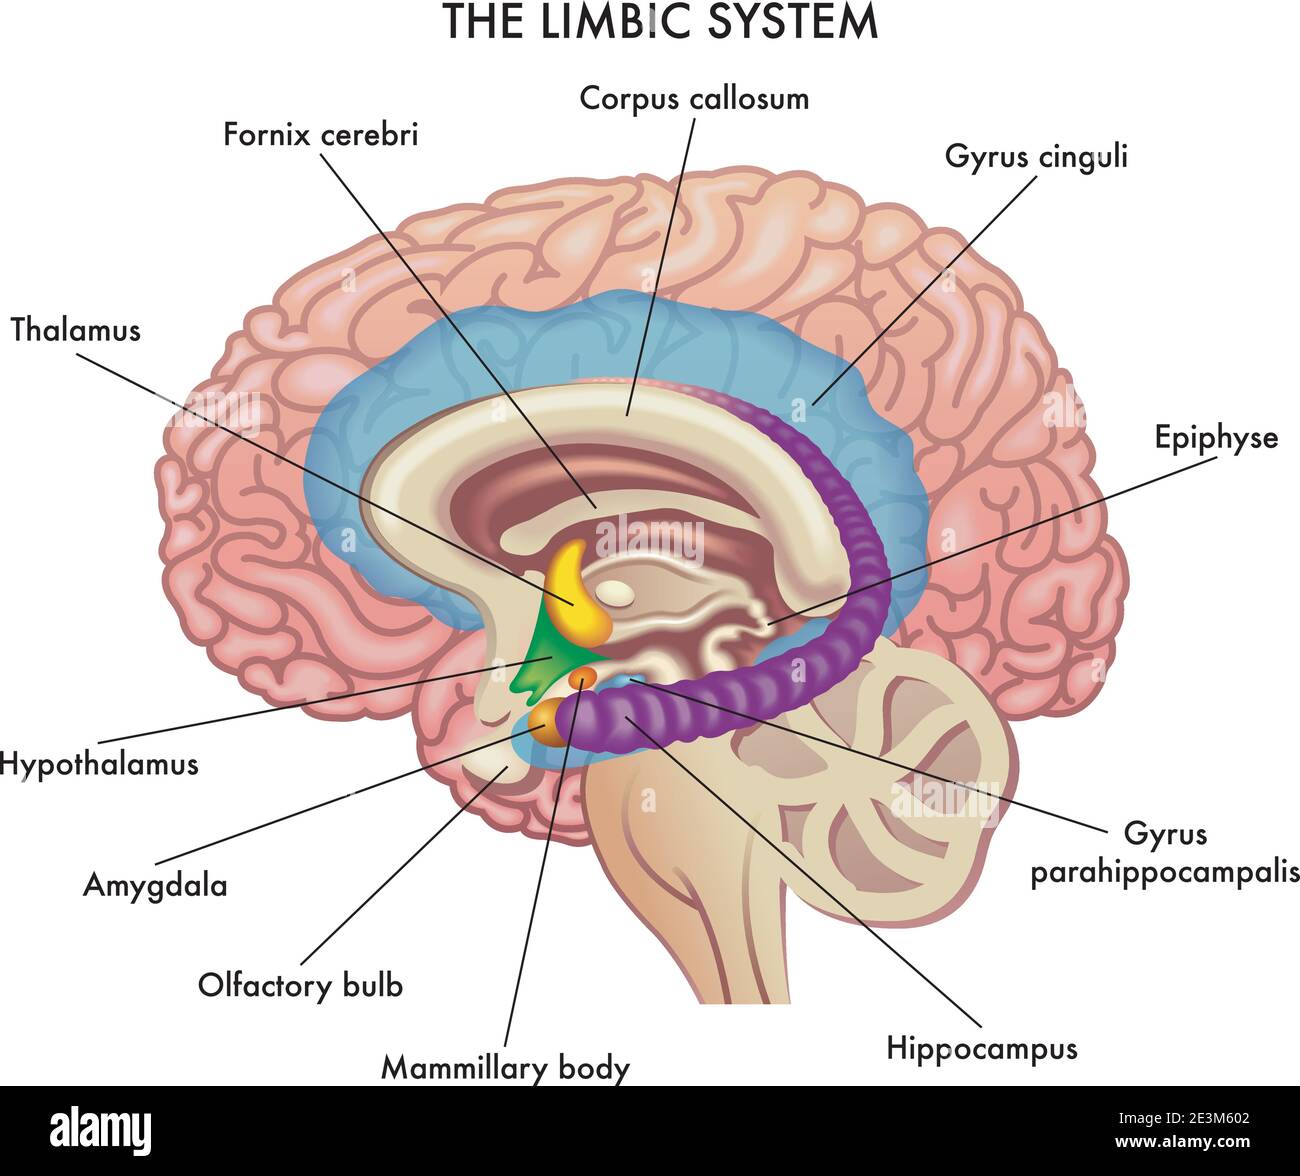 L'illustrazione medica mostra i principali organi del sistema Limbico del cervello umano, con annotazioni. Illustrazione Vettoriale